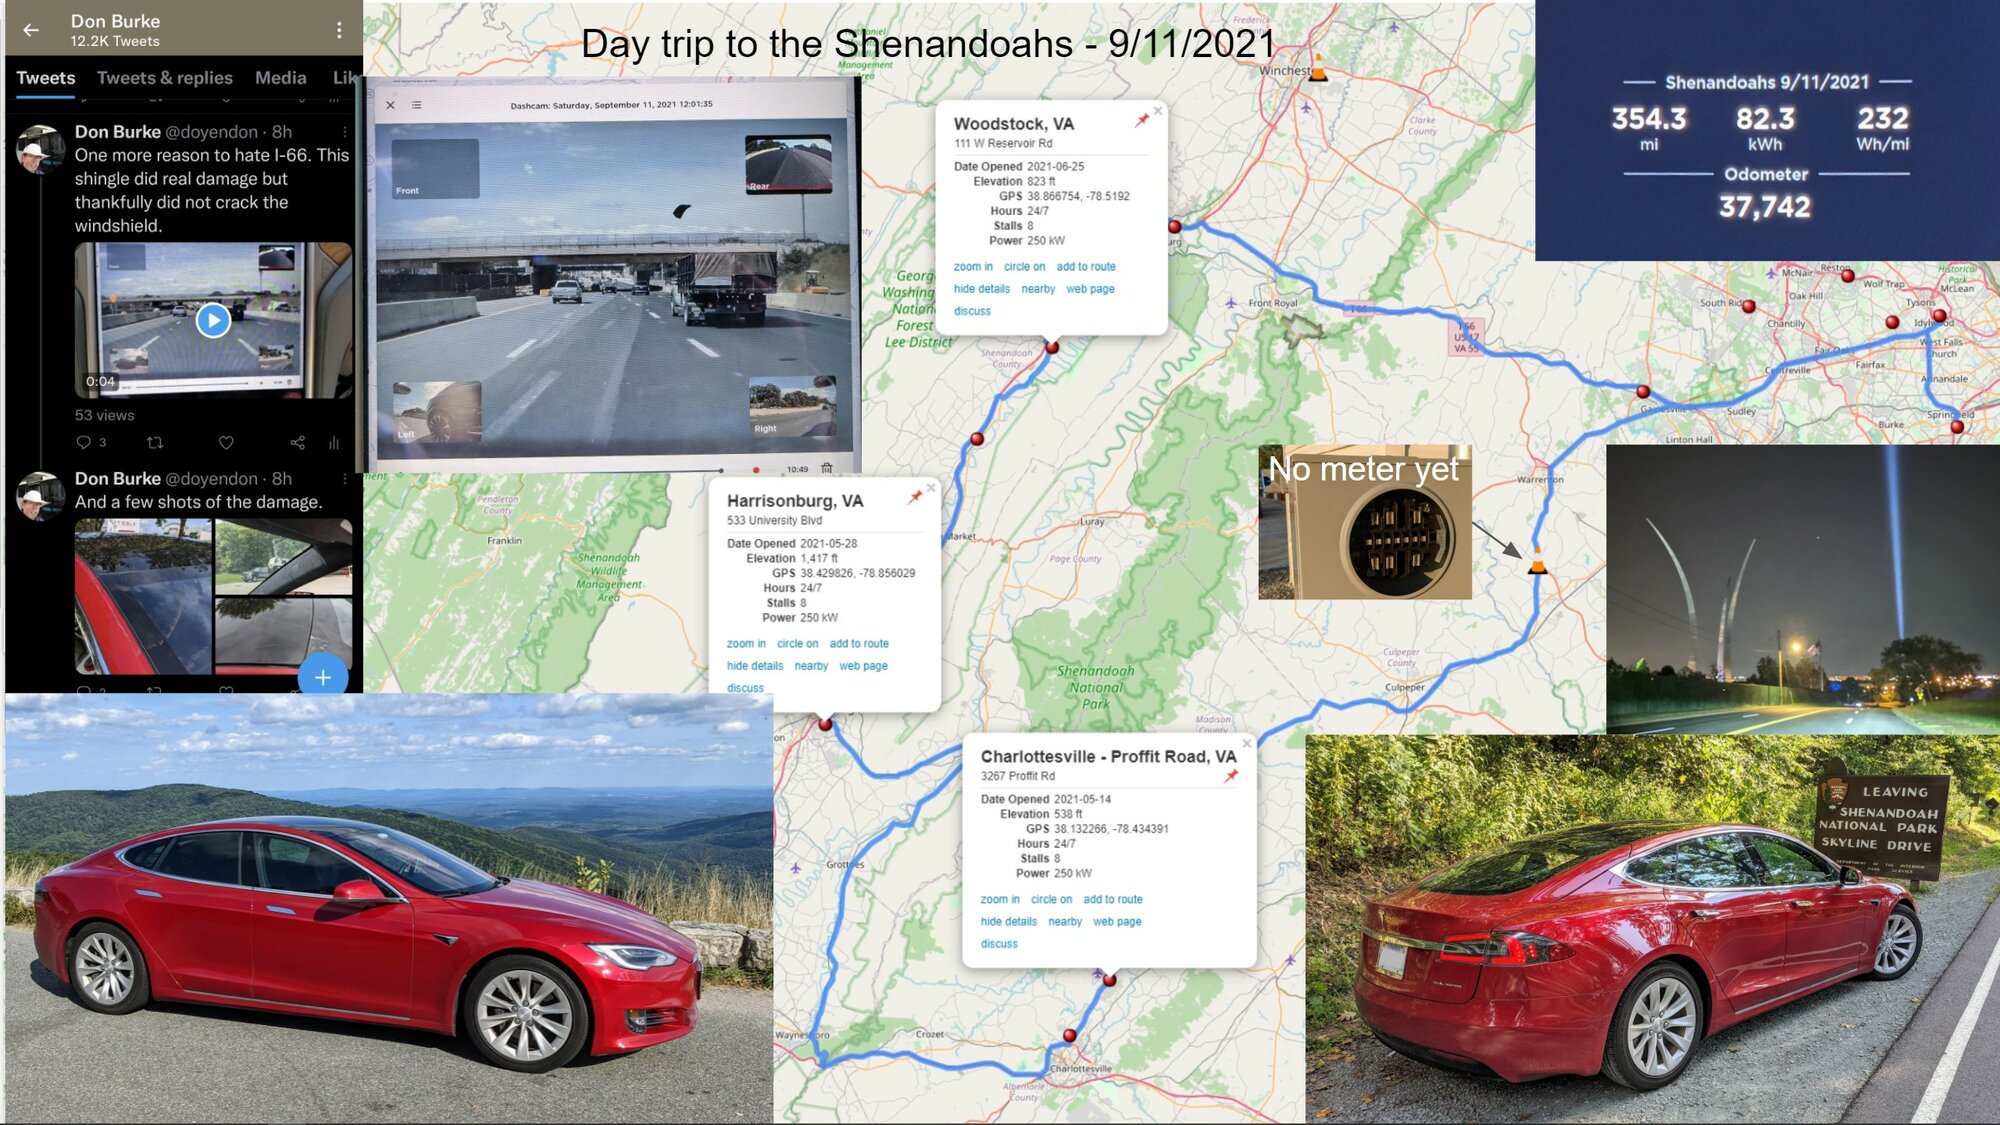 2021 09 11 Shenandoah day trip.jpg